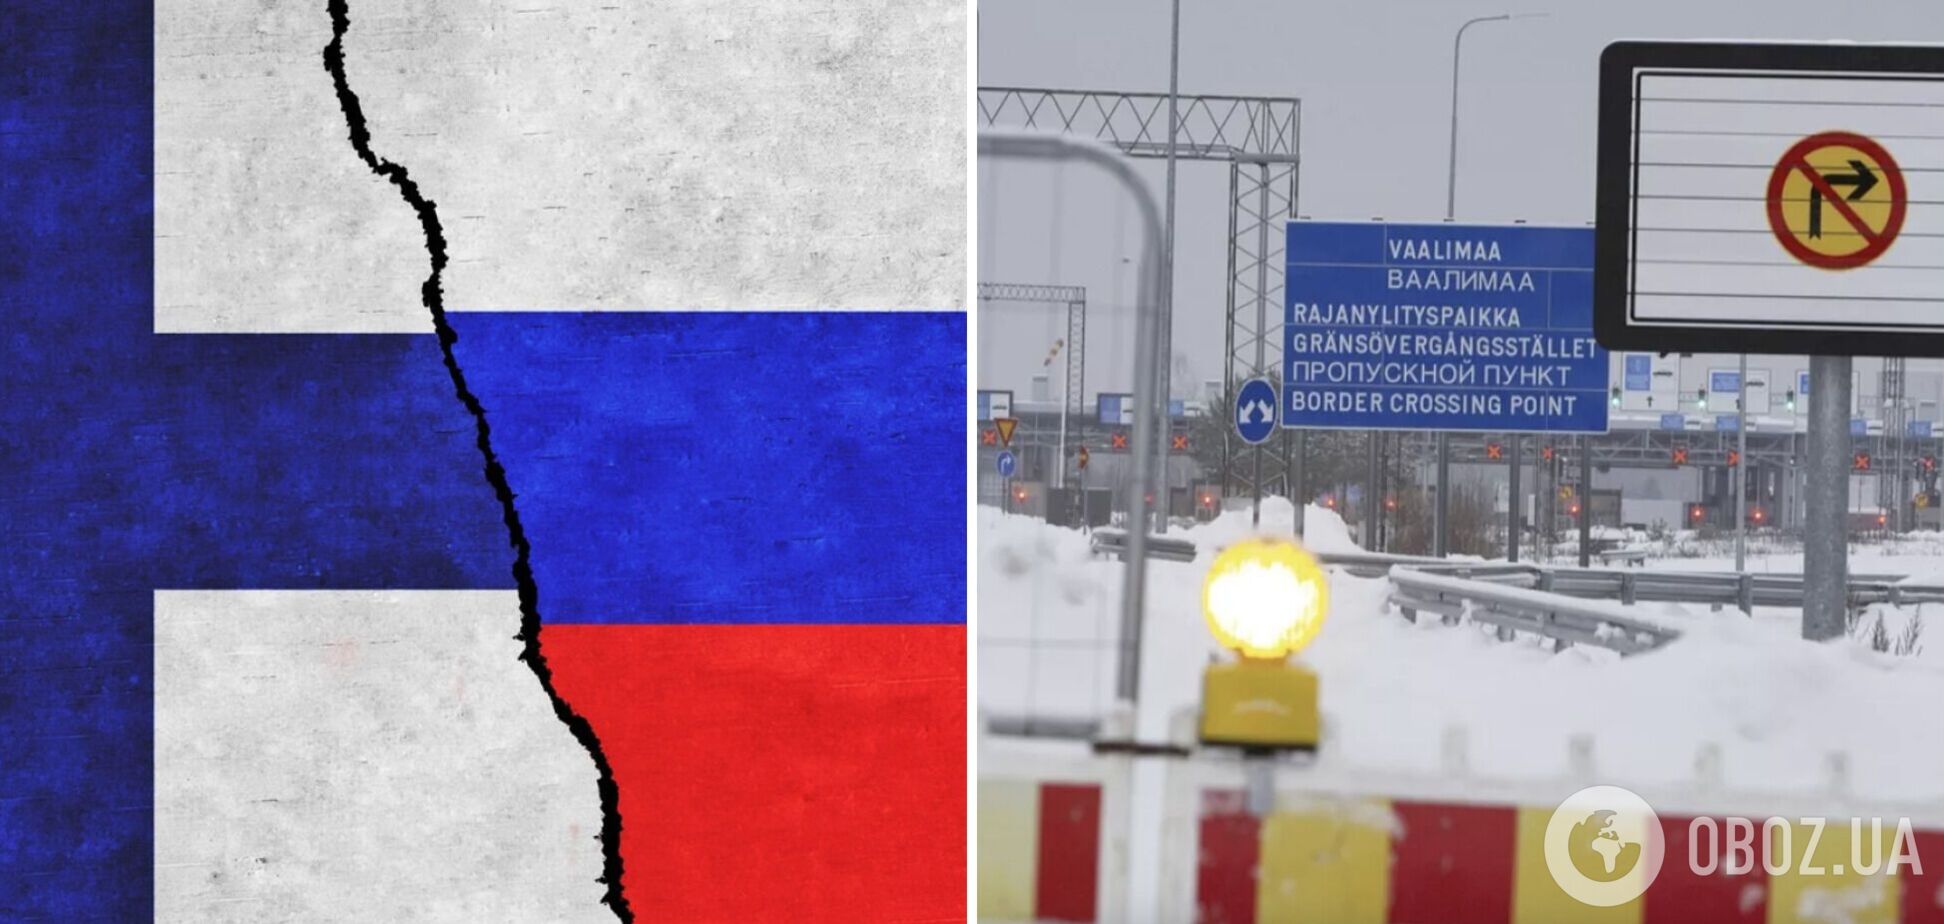 'Чтобы ситуация была спокойной': власти Финляндии пока не планируют открывать границу с Россией